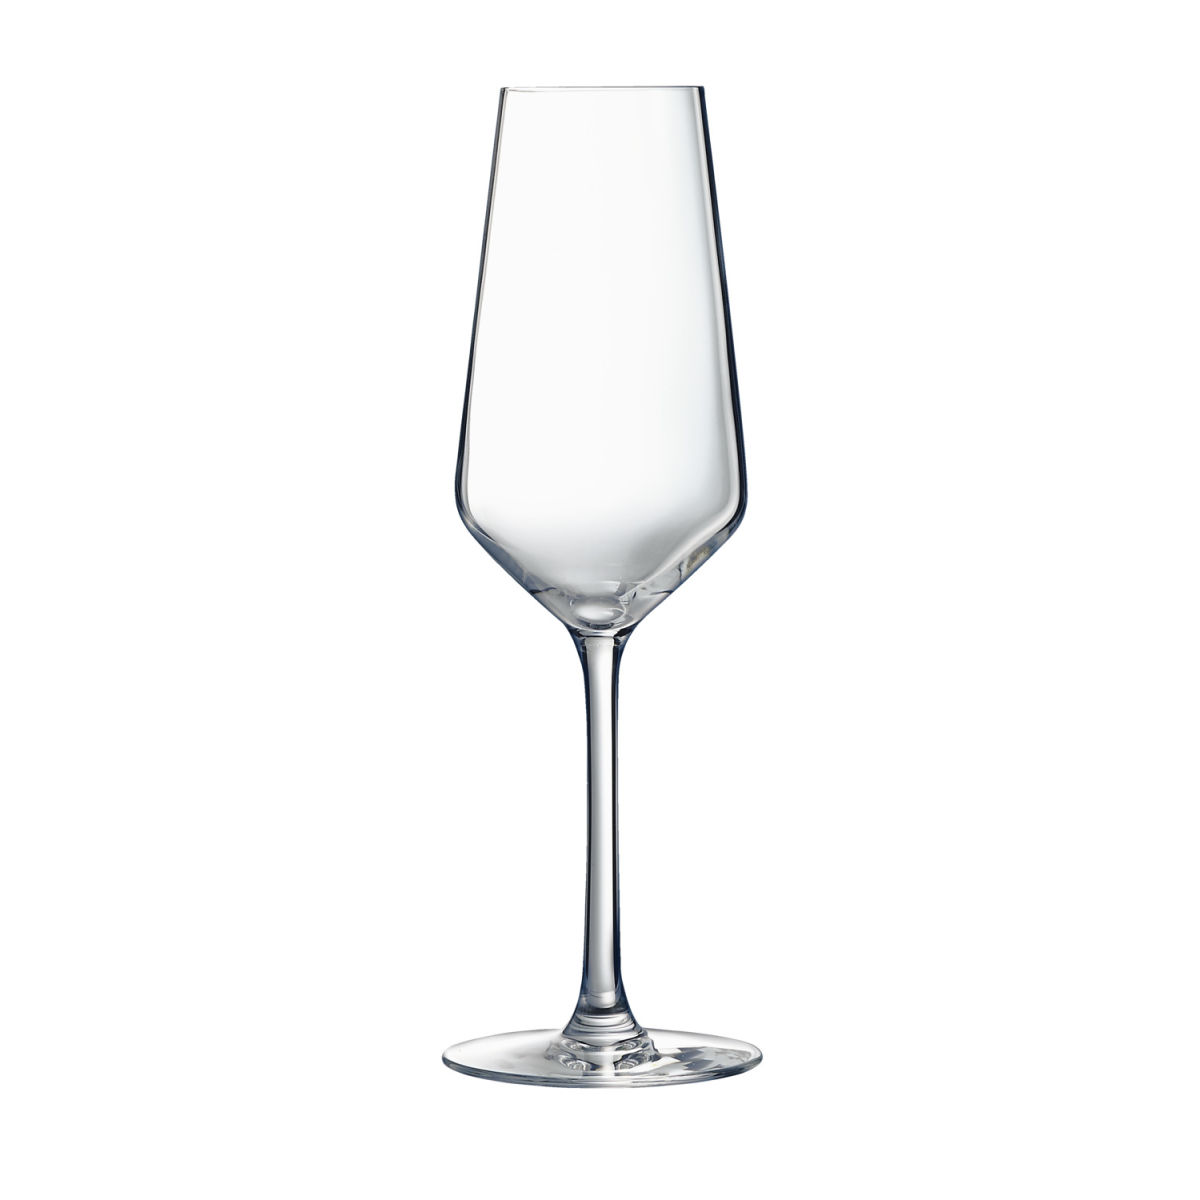 ARC Champagneglas Vina Juliette; 230ml, 7.7x4.8x21.8 cm (ØxØxH); transparant; 6 stuk / verpakking